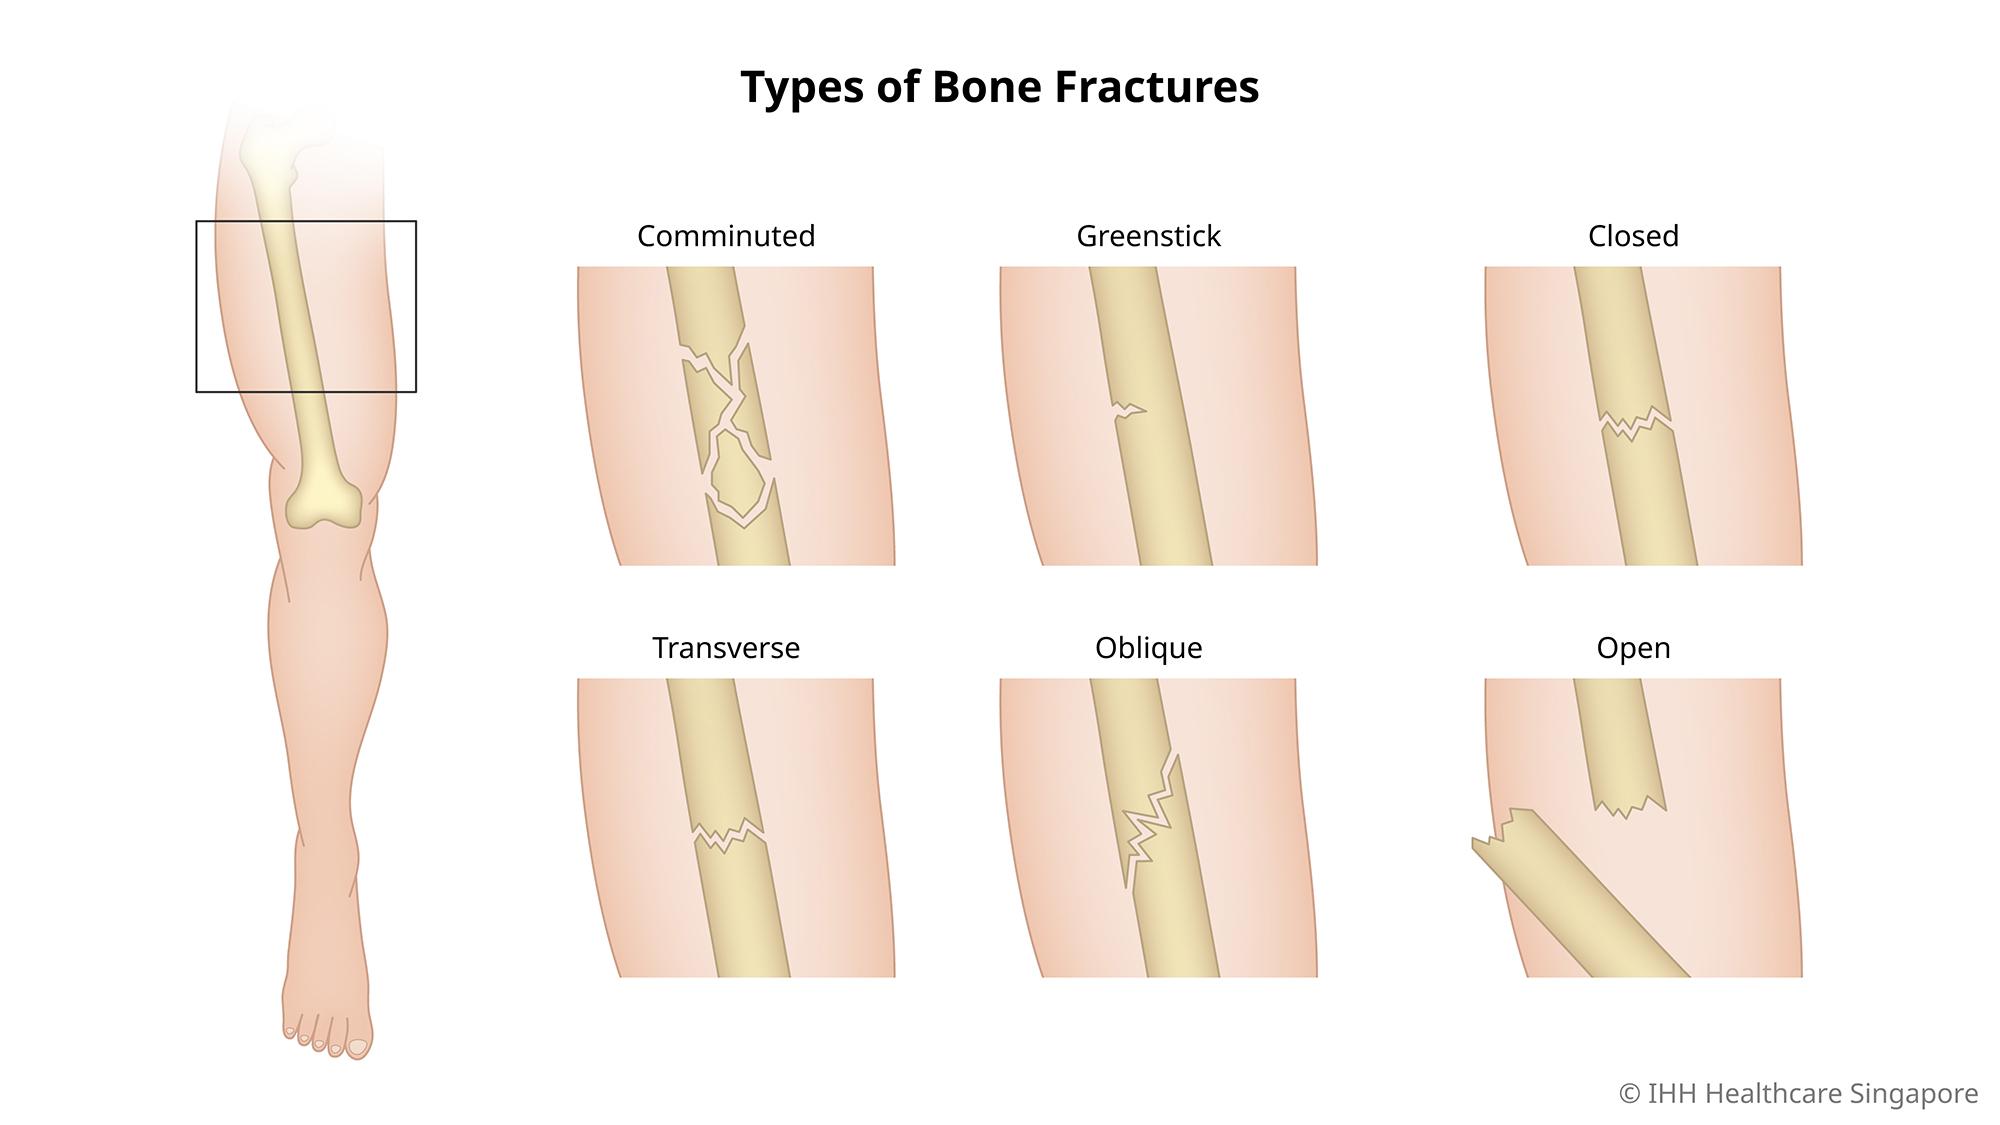 Gambar berbagai jenis fraktur tulang.